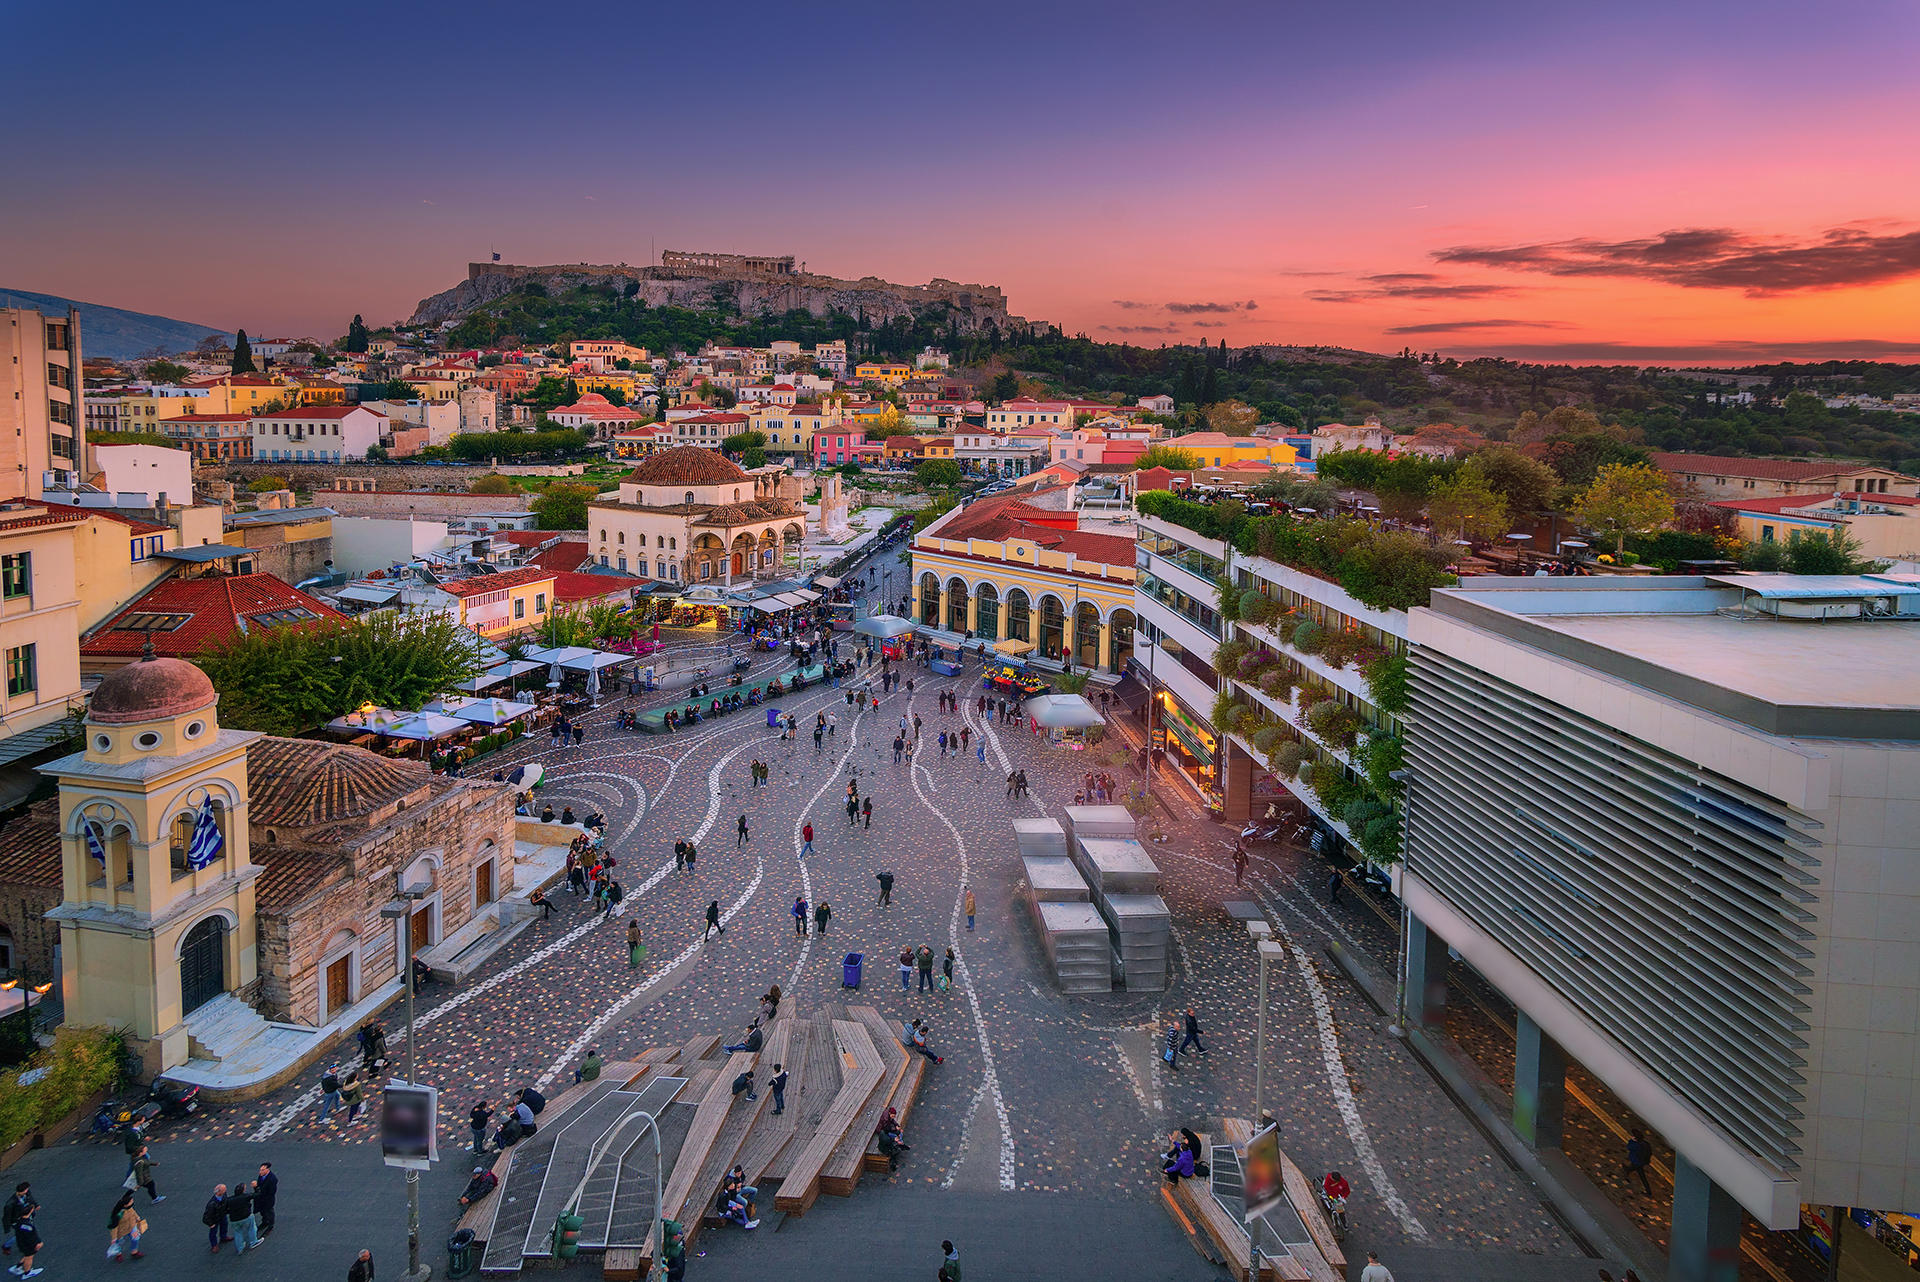 Atenas es solo una de las dos ciudades en la lista que registra aumentos en los costos de alojamiento desde marzo, aunque lo compensa con bajos costos en otros lugares